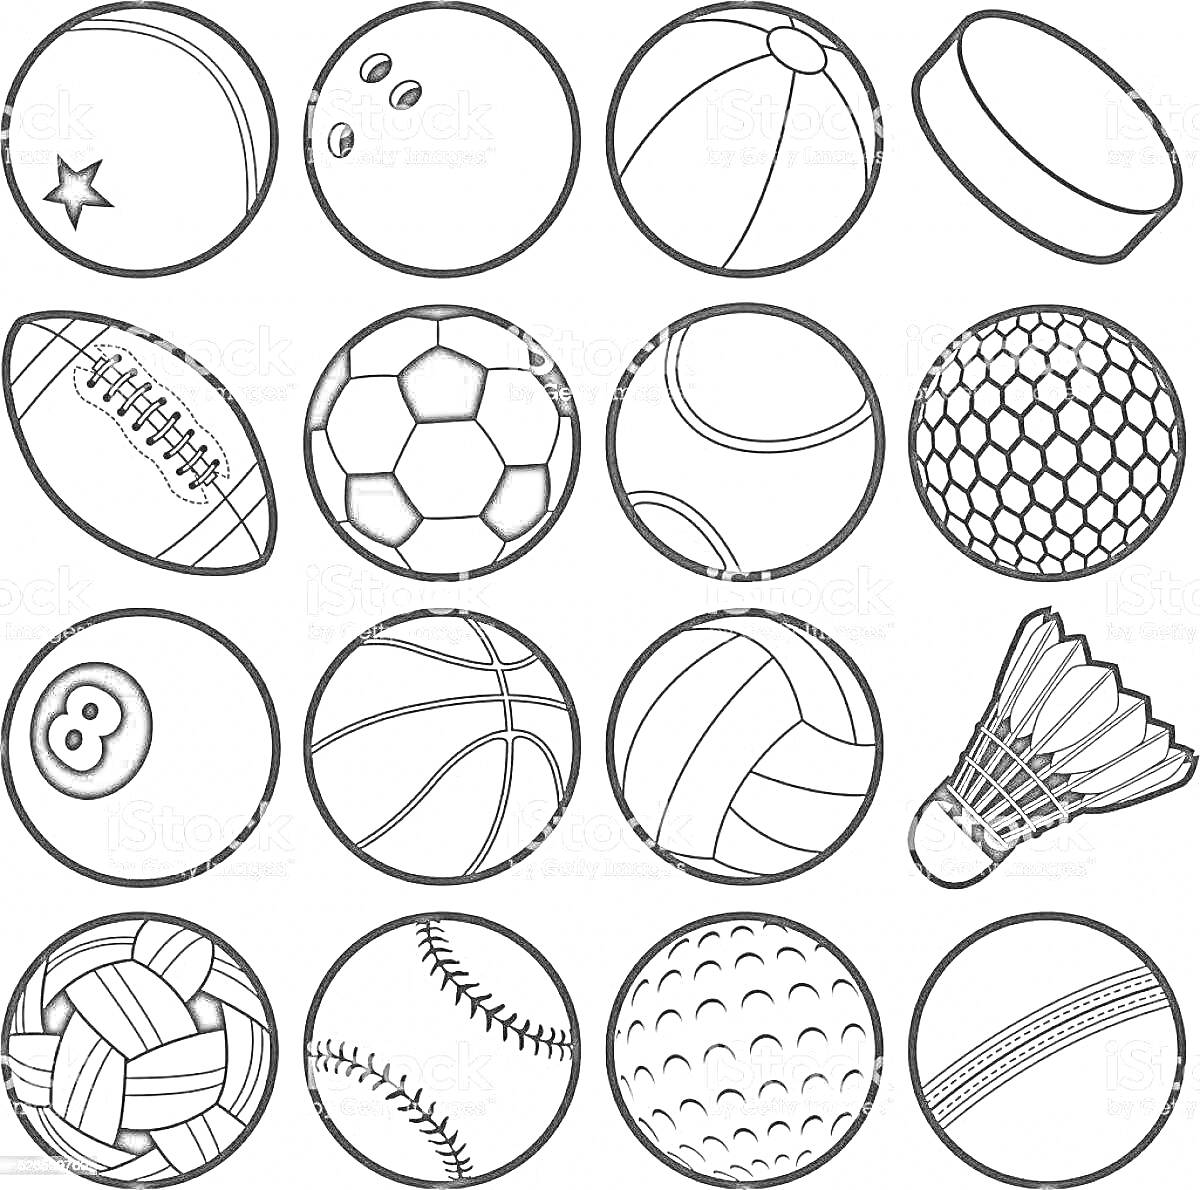 Раскраска Мячики и спортивные снаряды (мяч со звездой, боулинг, пляжный мяч, хоккейная шайба, регбийный мяч, футбольный мяч, теннисный мяч, бейсбольный мяч, бильярдный шар, баскетбольный мяч, волейбольный мяч, волан для бадминтона, мяч для пляжного волейбола, софтб